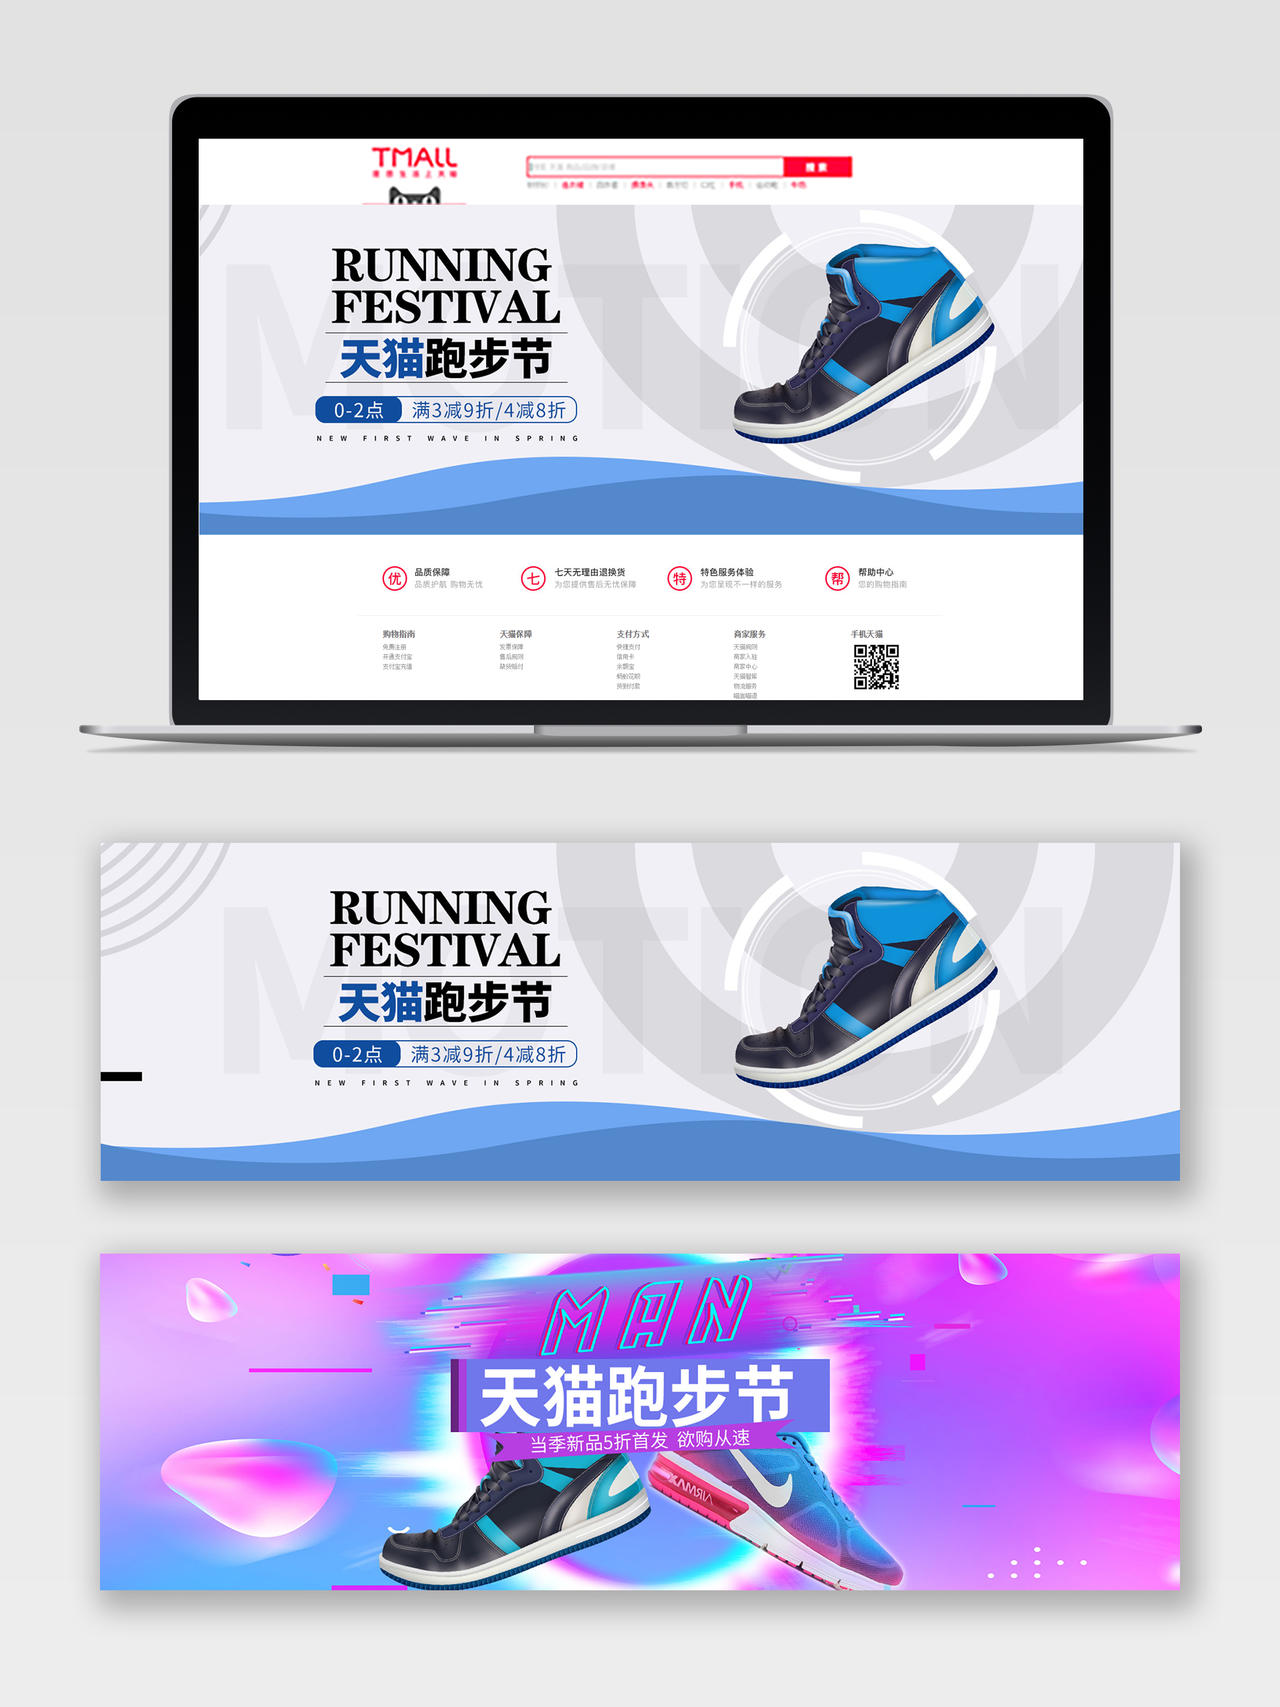 蓝色炫彩天猫跑步节运动鞋促销宣传电商banner户外装备